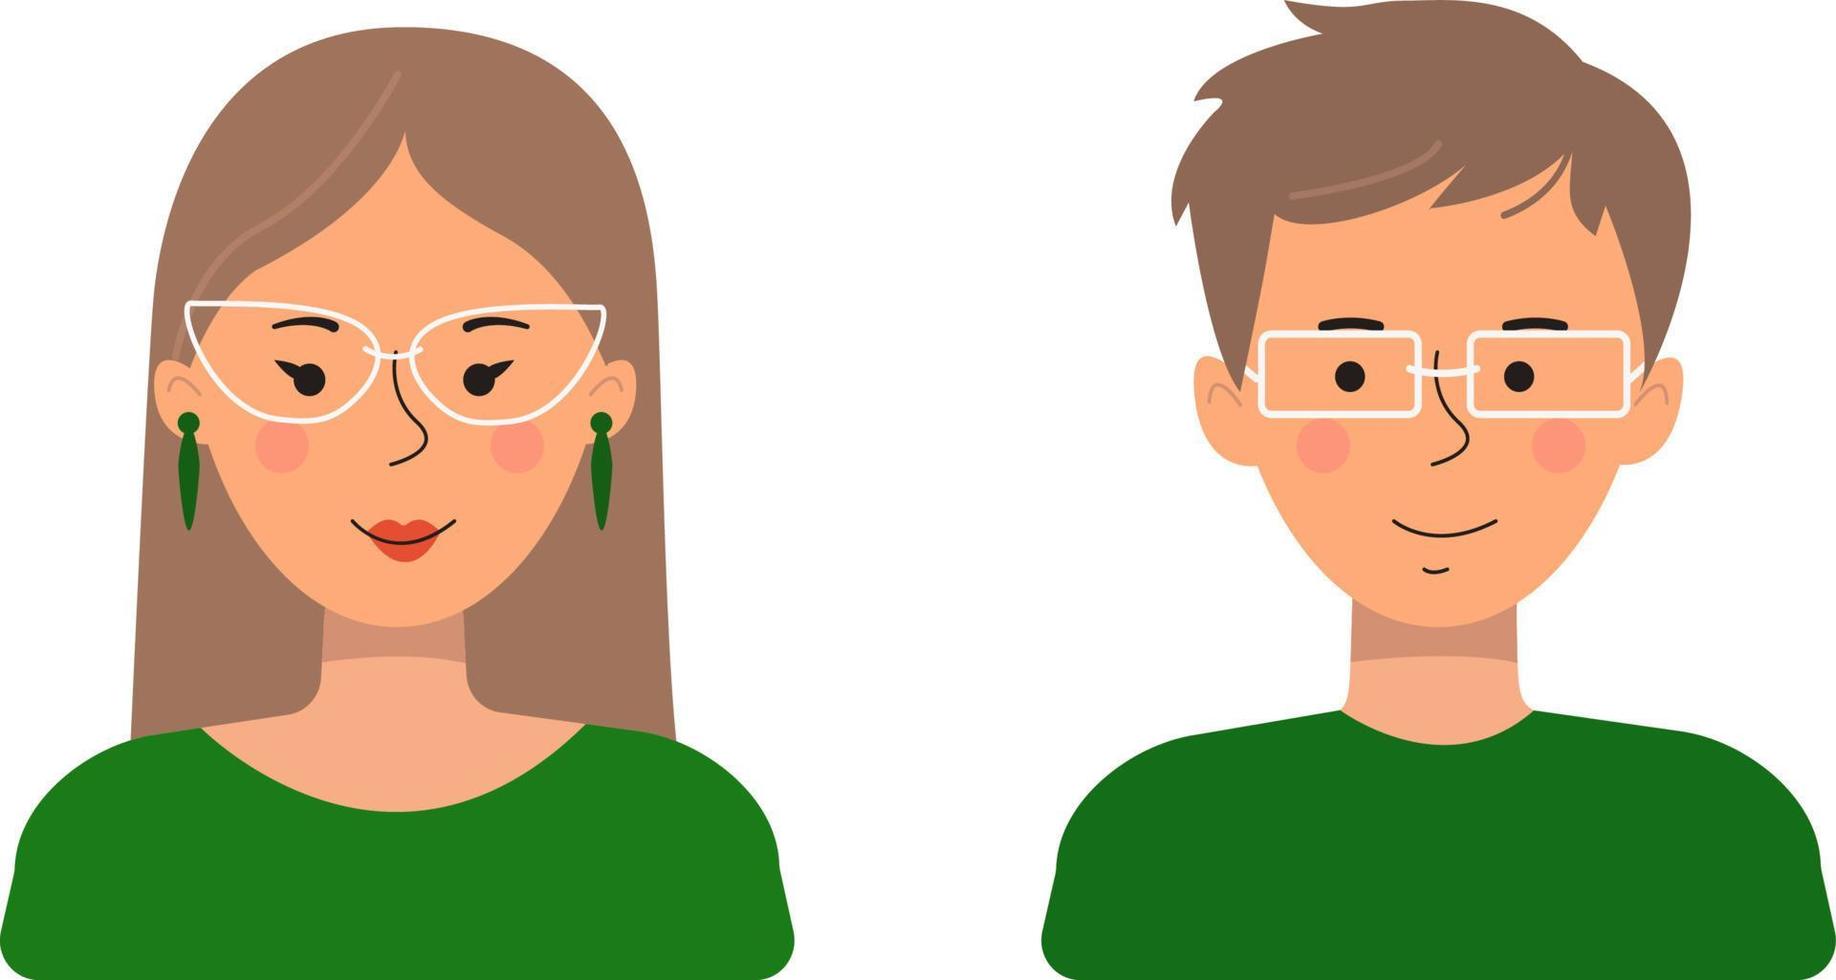 avatares de pessoas em um estilo simples. ilustração em vetor de um homem e uma mulher isolados em um fundo branco.